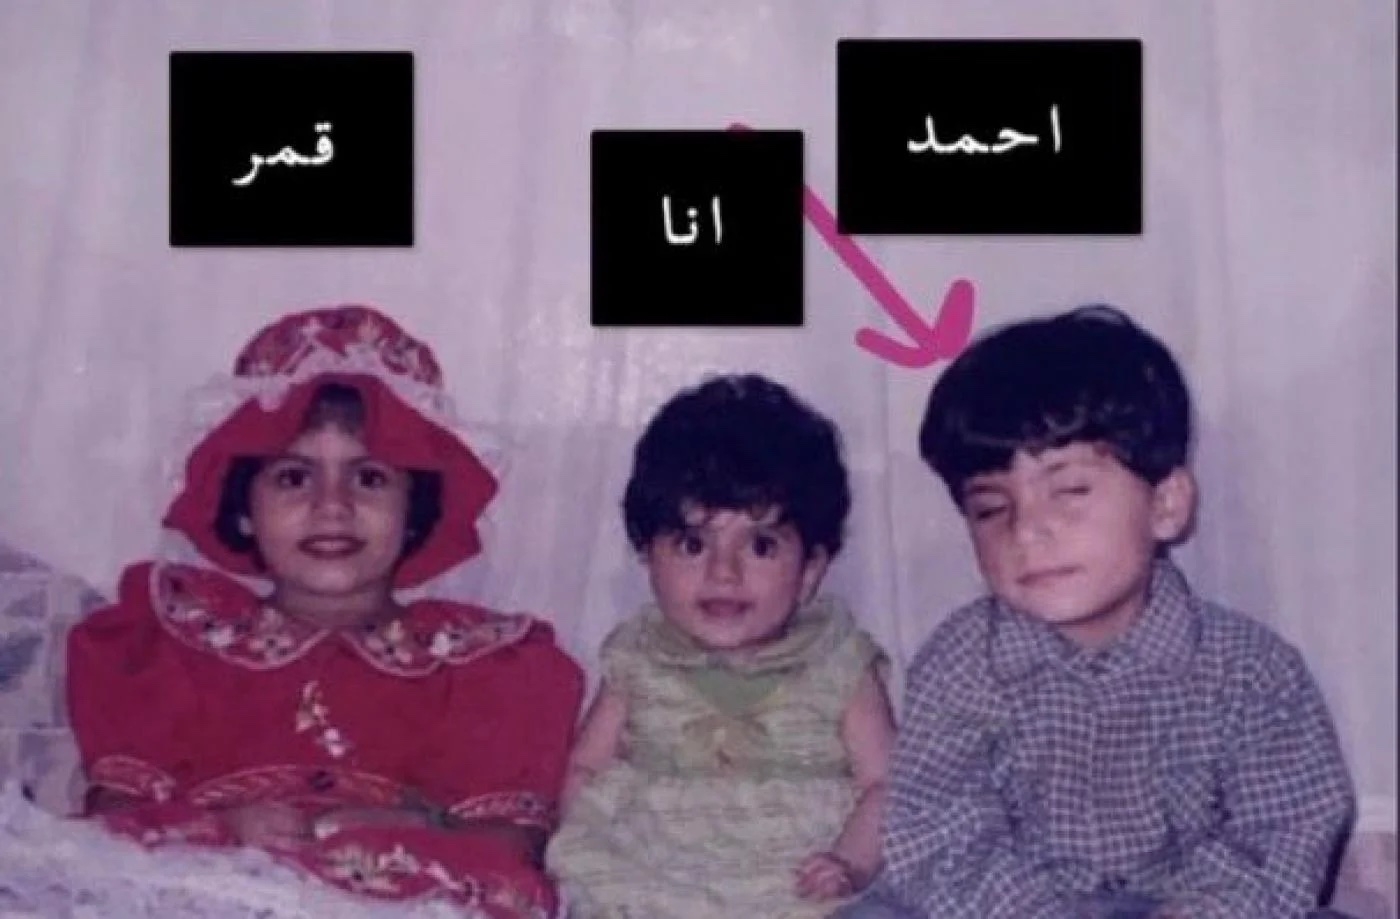 Manal (au centre) a publié sur les réseaux sociaux une photo d’enfance de sa défunte sœur Qamar (à gauche) et de son frère Ahmed (à droite), qu’elle a accusé de l’avoir tuée (capture d’écran/Twitter)